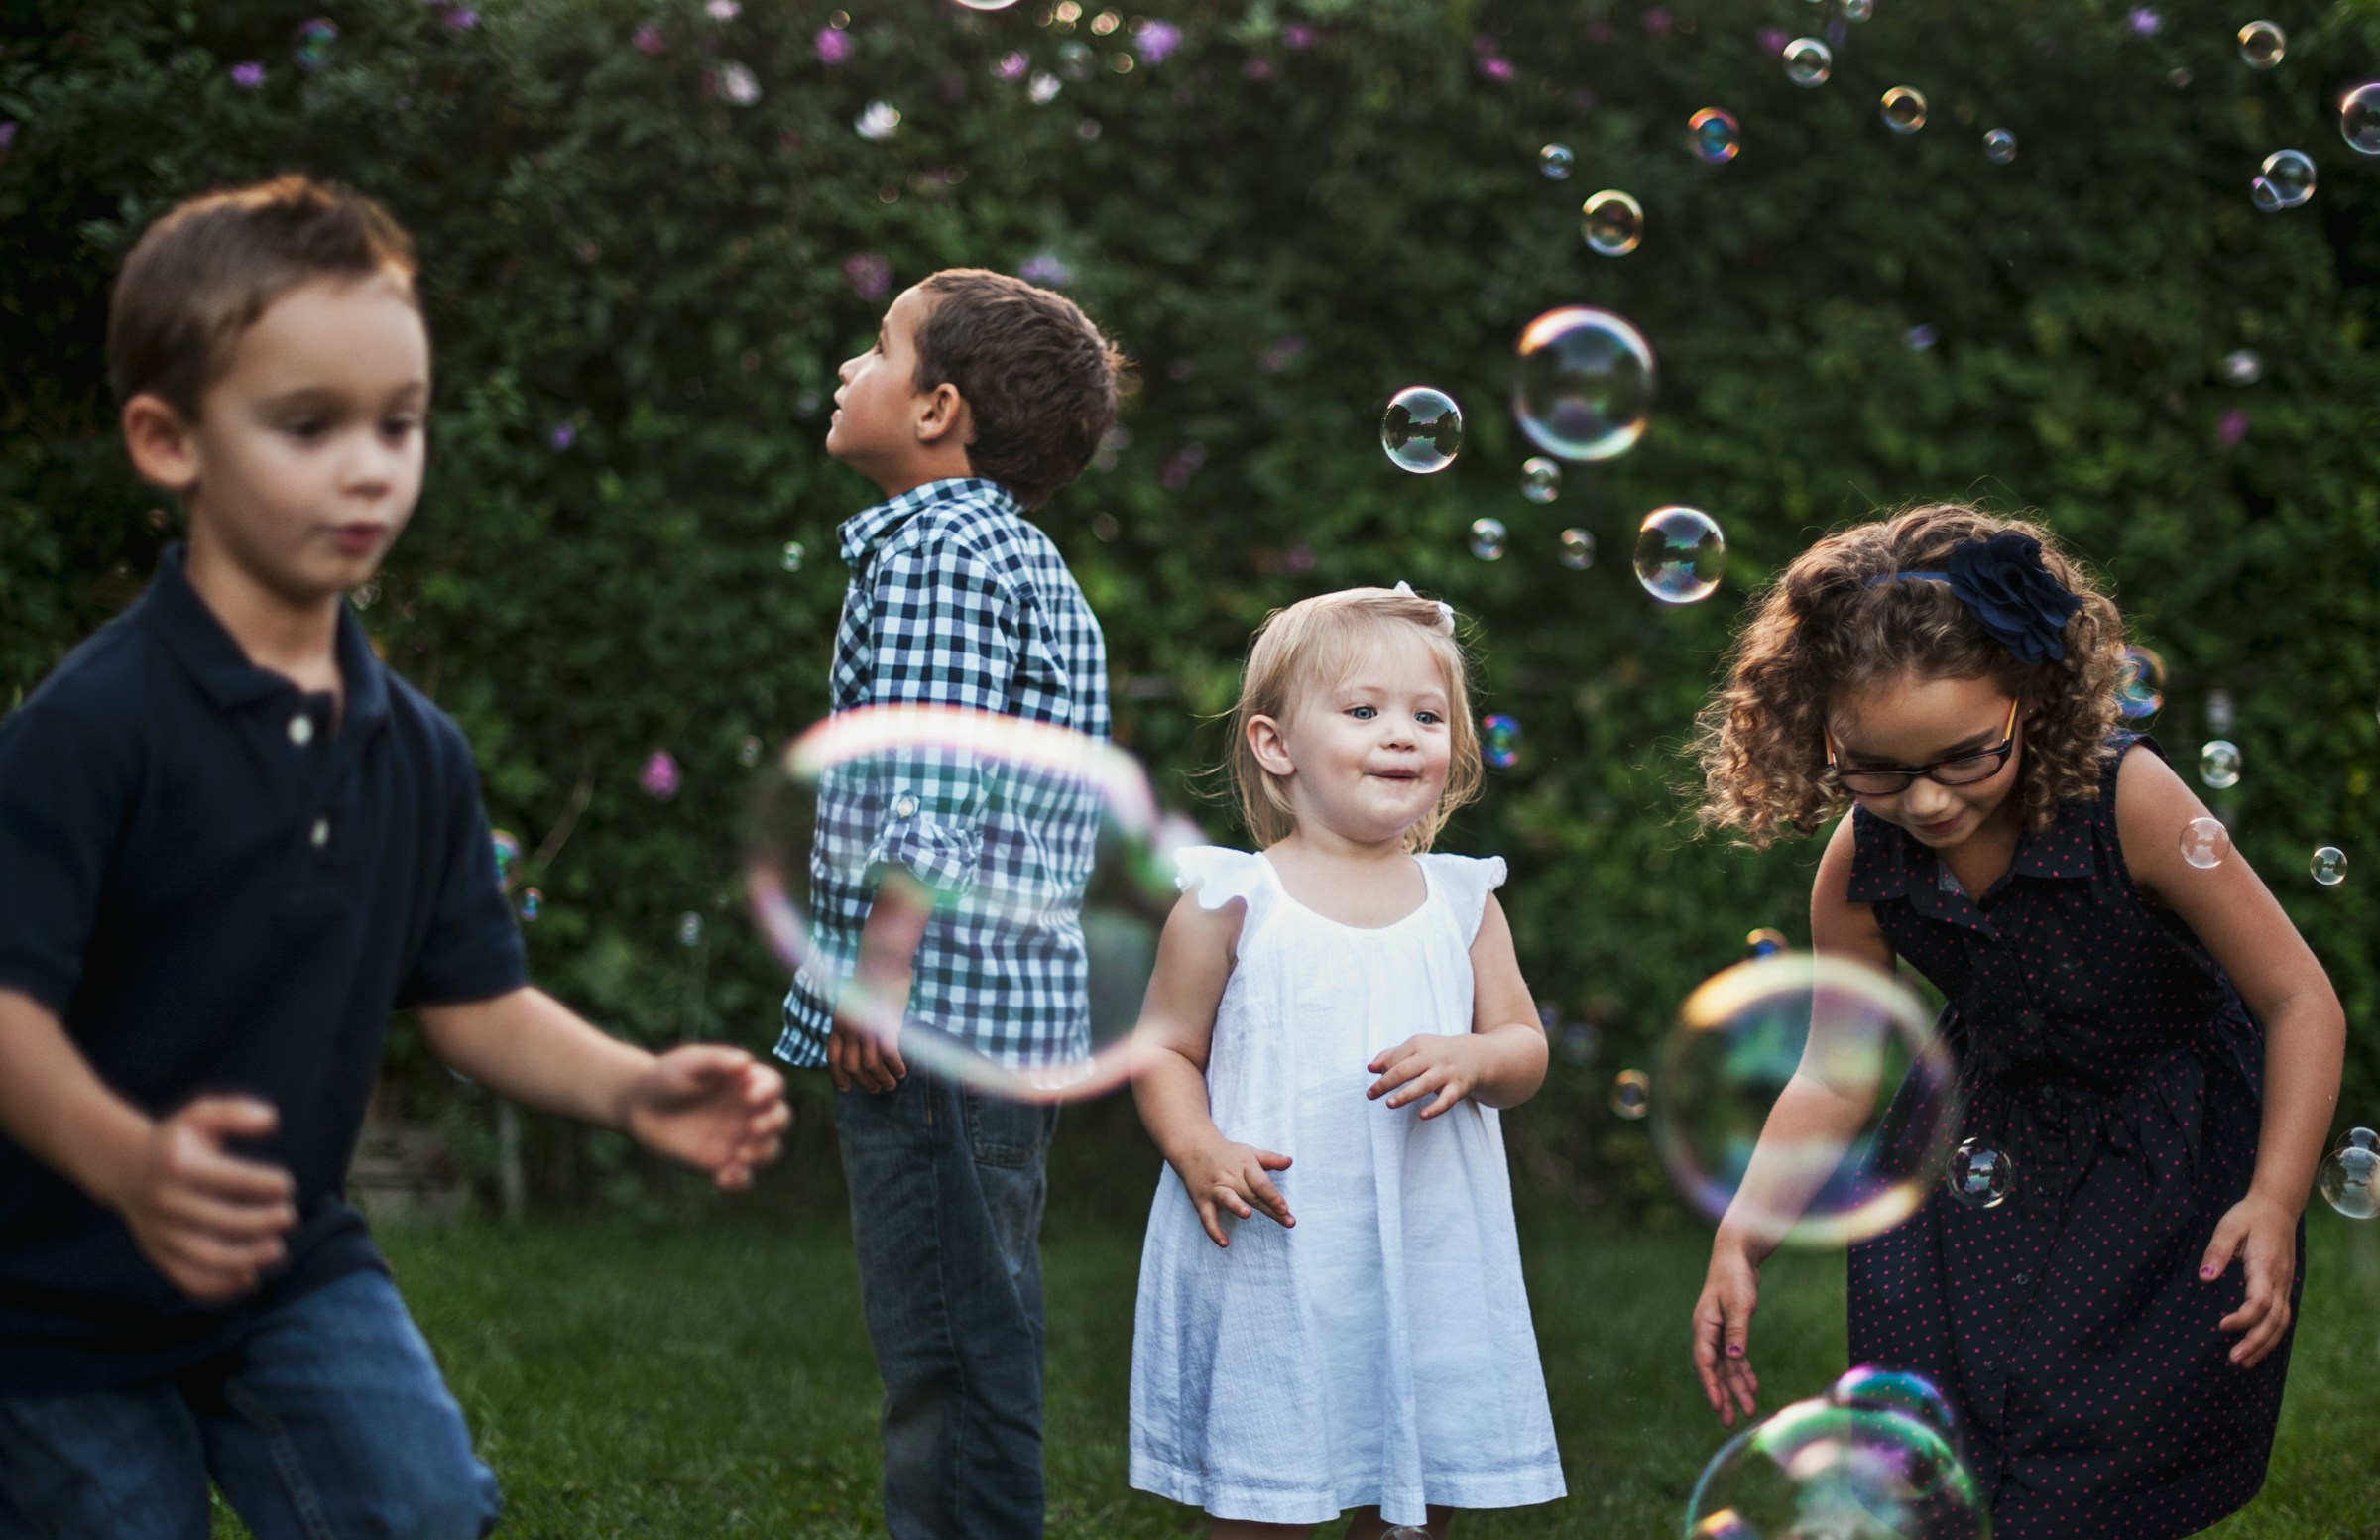 Kinder spielen mit Seifenblasen im Freien | Quelle: Unsplash